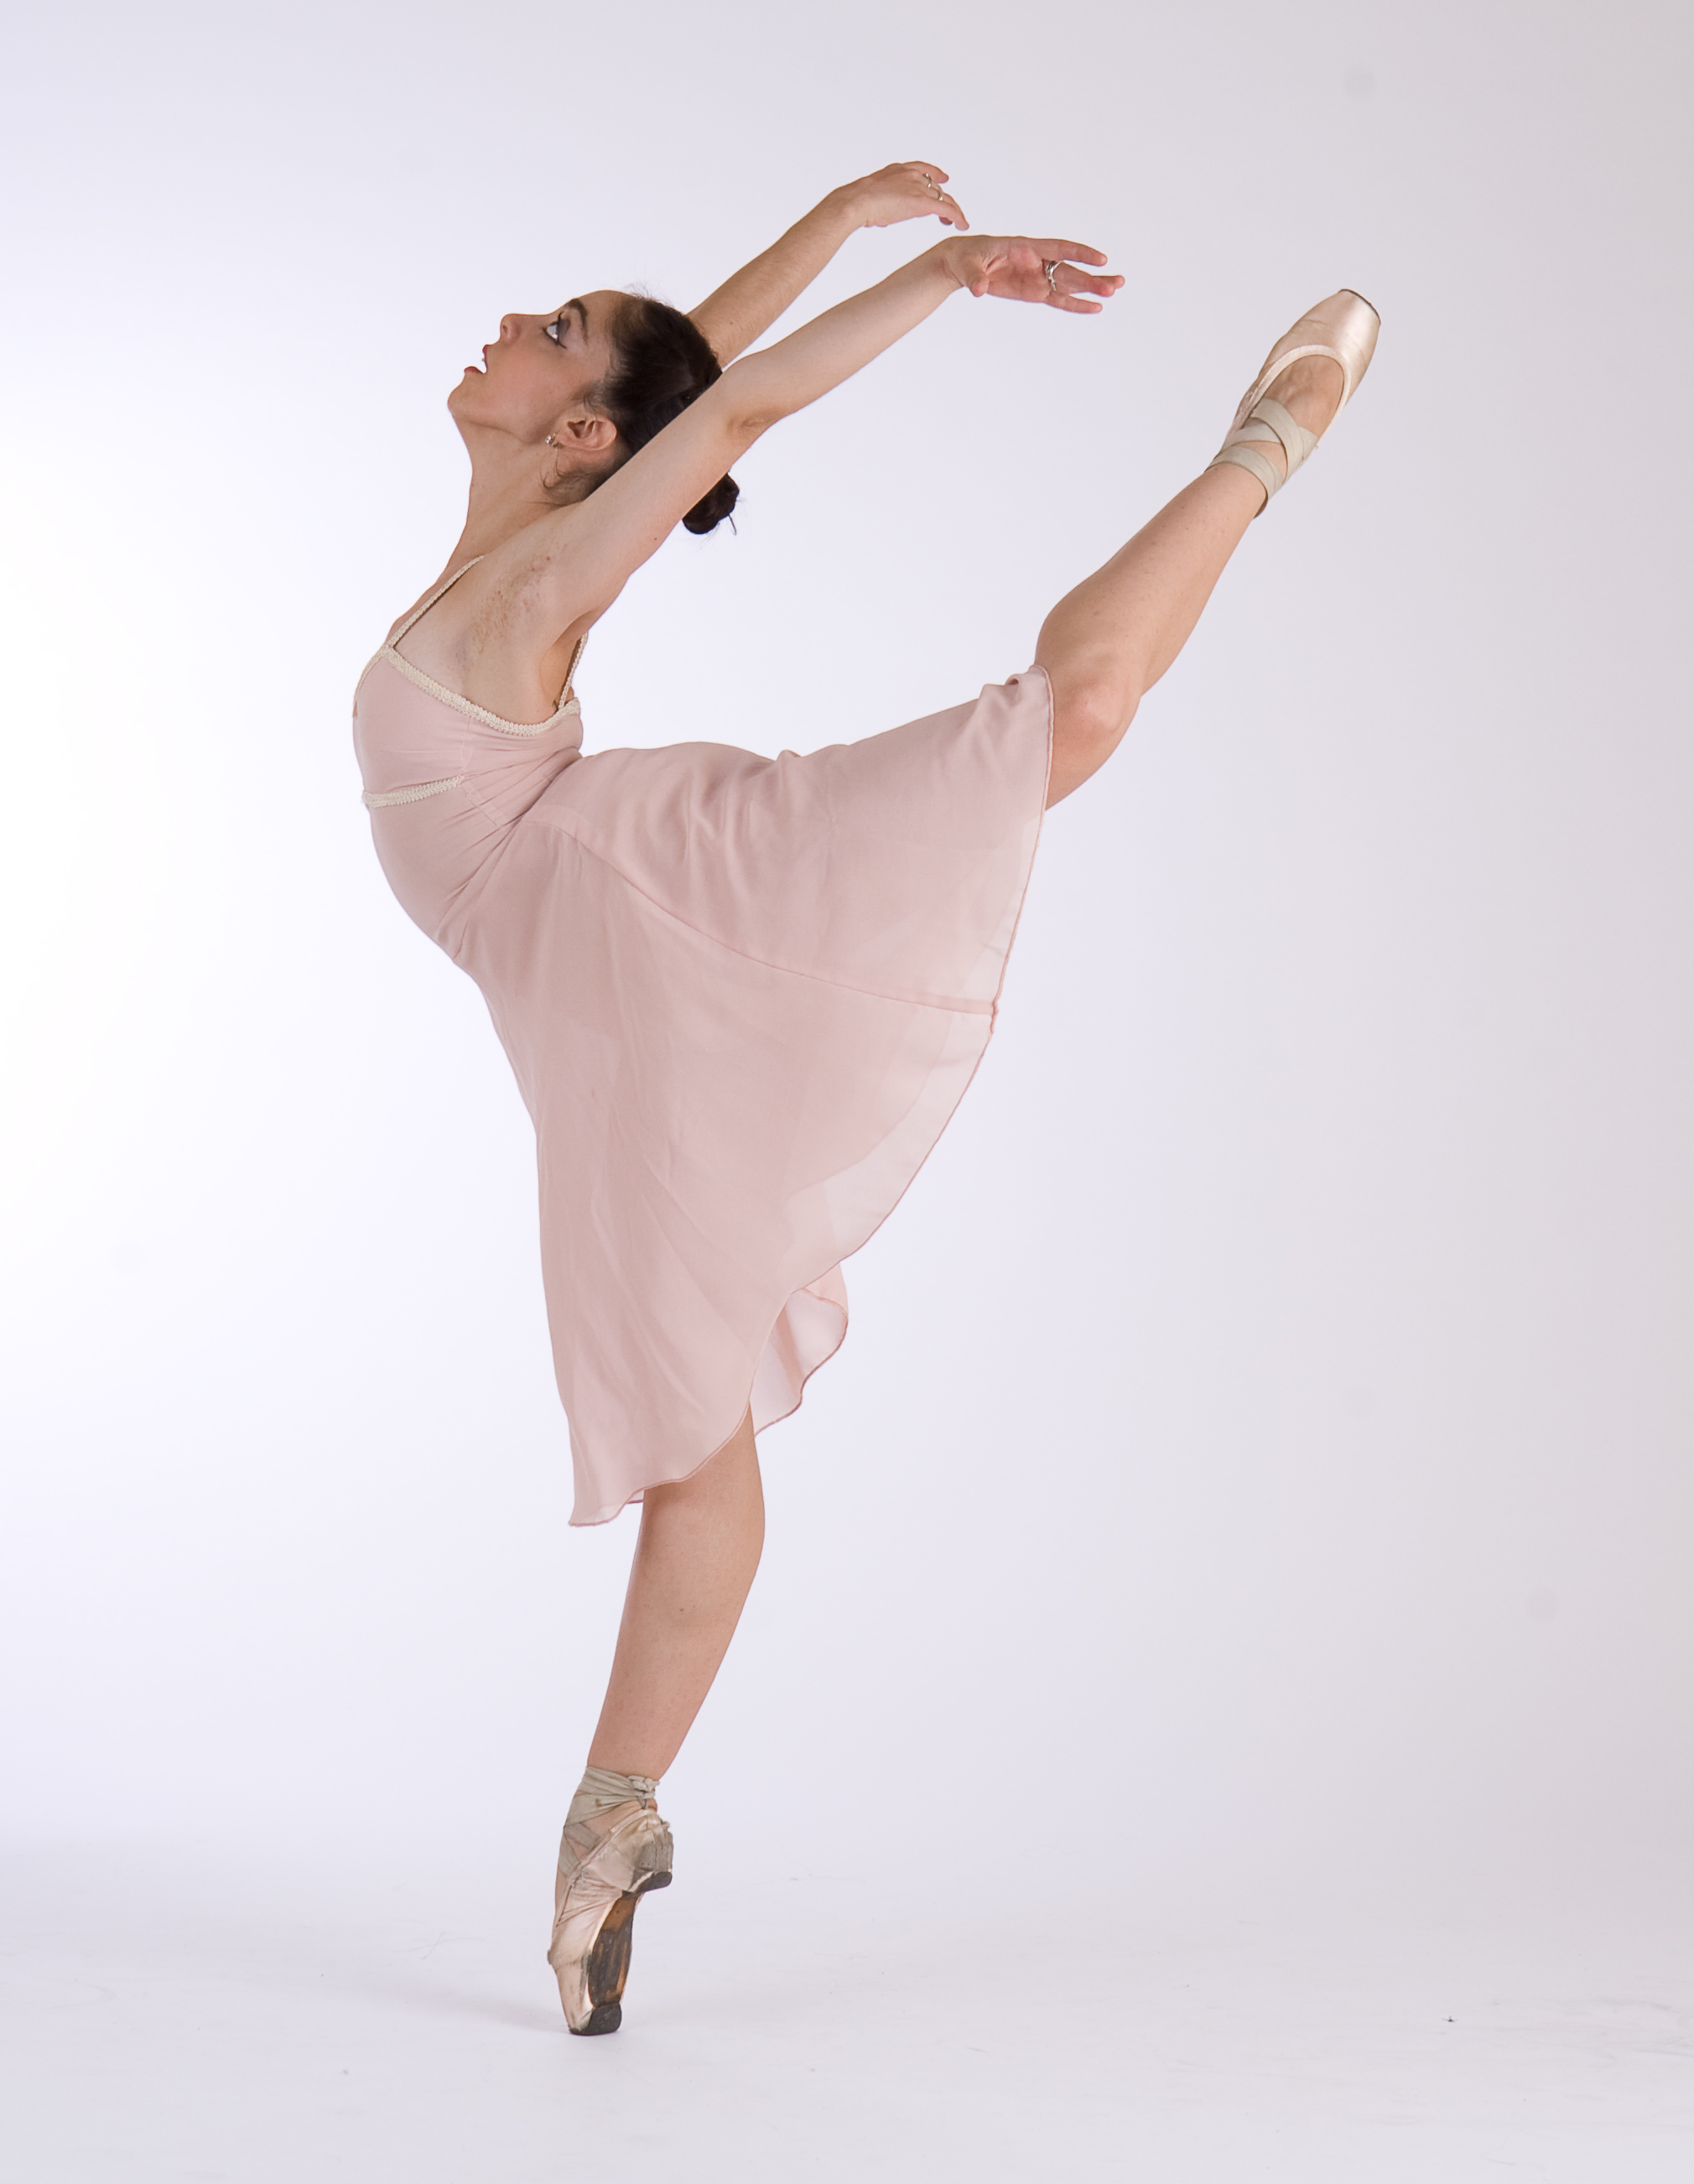 Cómo elegir la punta de ballet adecuada para tu nivel?